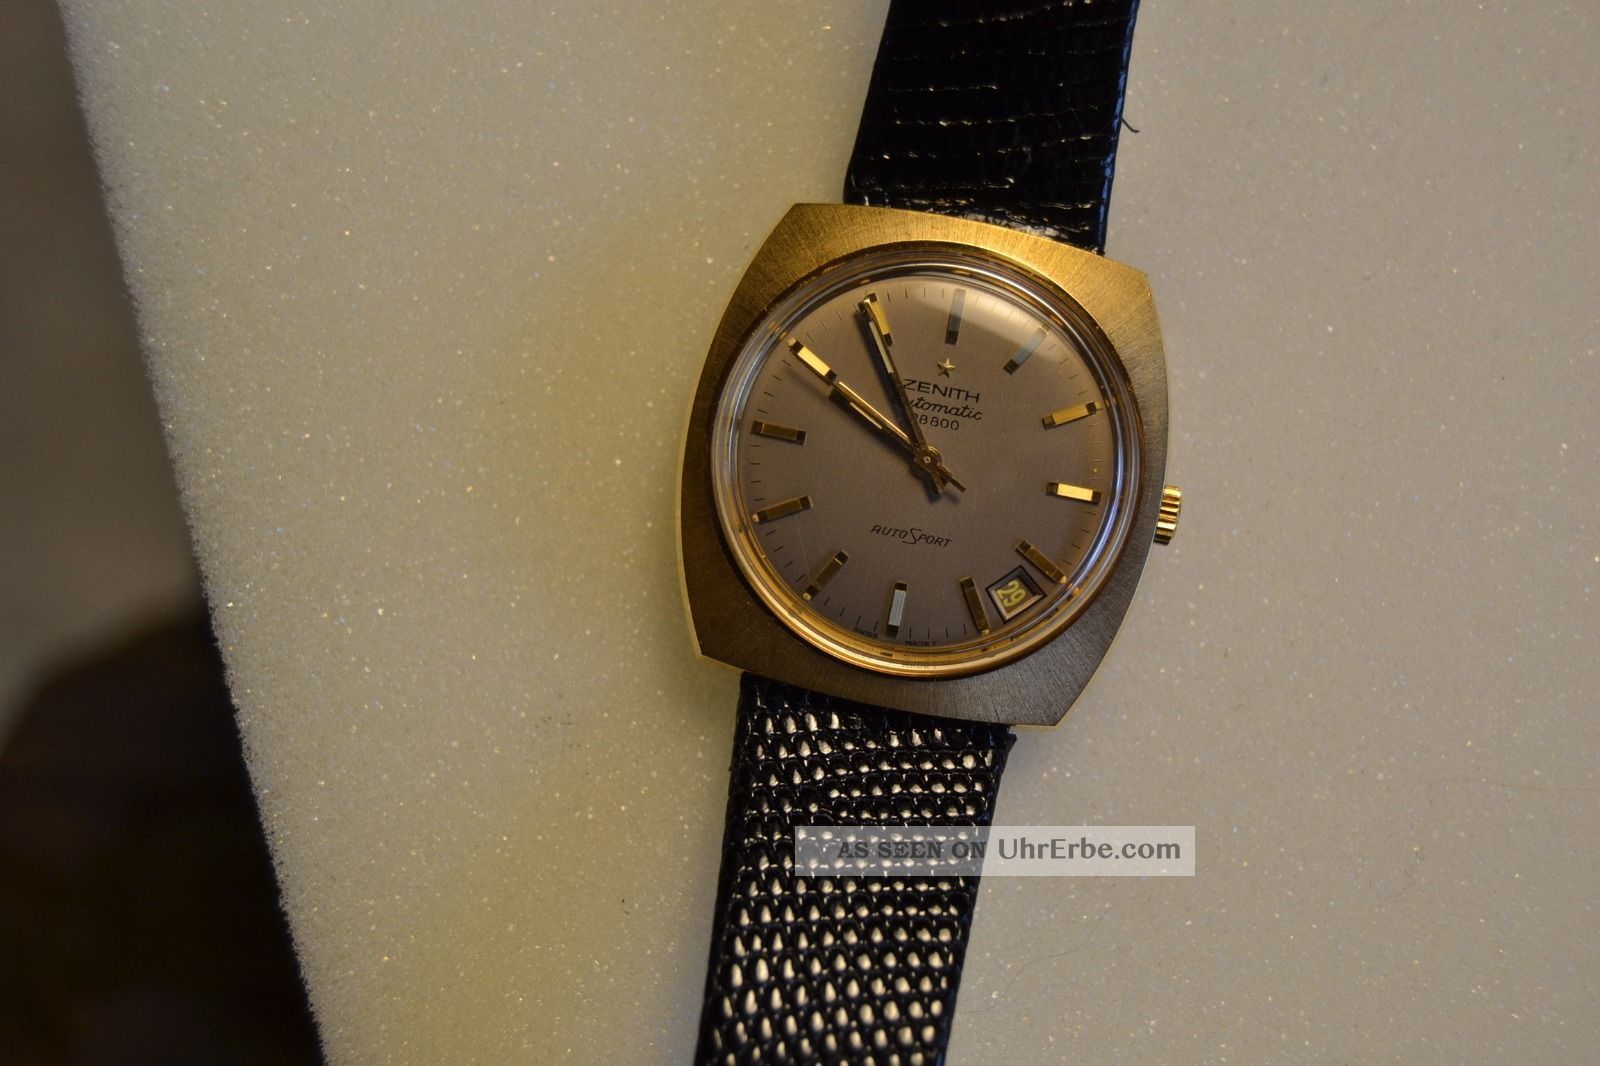 Zenith Herren Armbanduhr Automatic (old Stock) Armbanduhren Bild